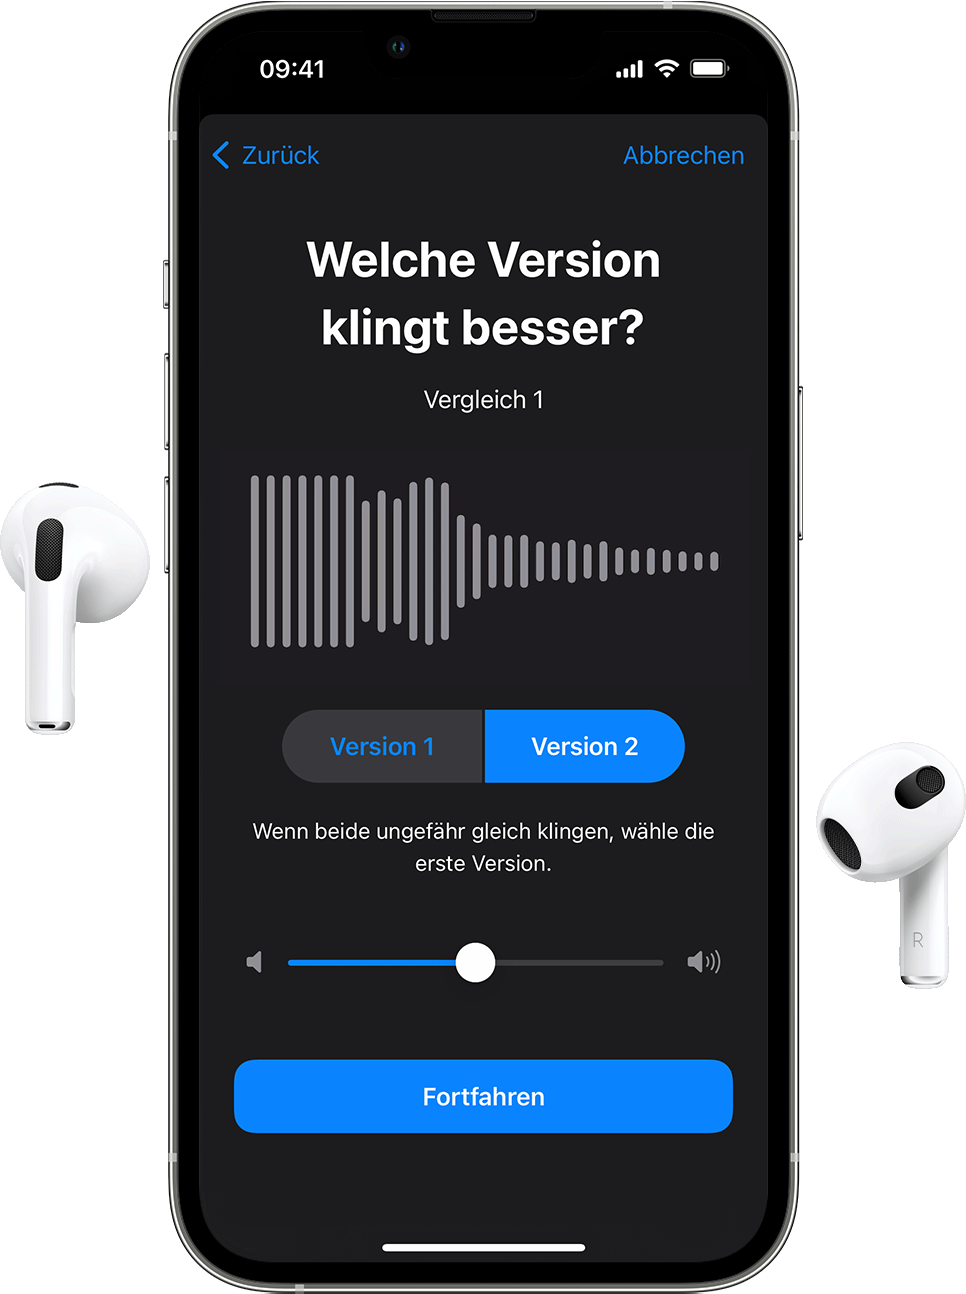 AirPods und ein iPhone mit benutzerdefinierter Audioeinrichtung, das fragt, welches Hörbeispiel besser klingt.